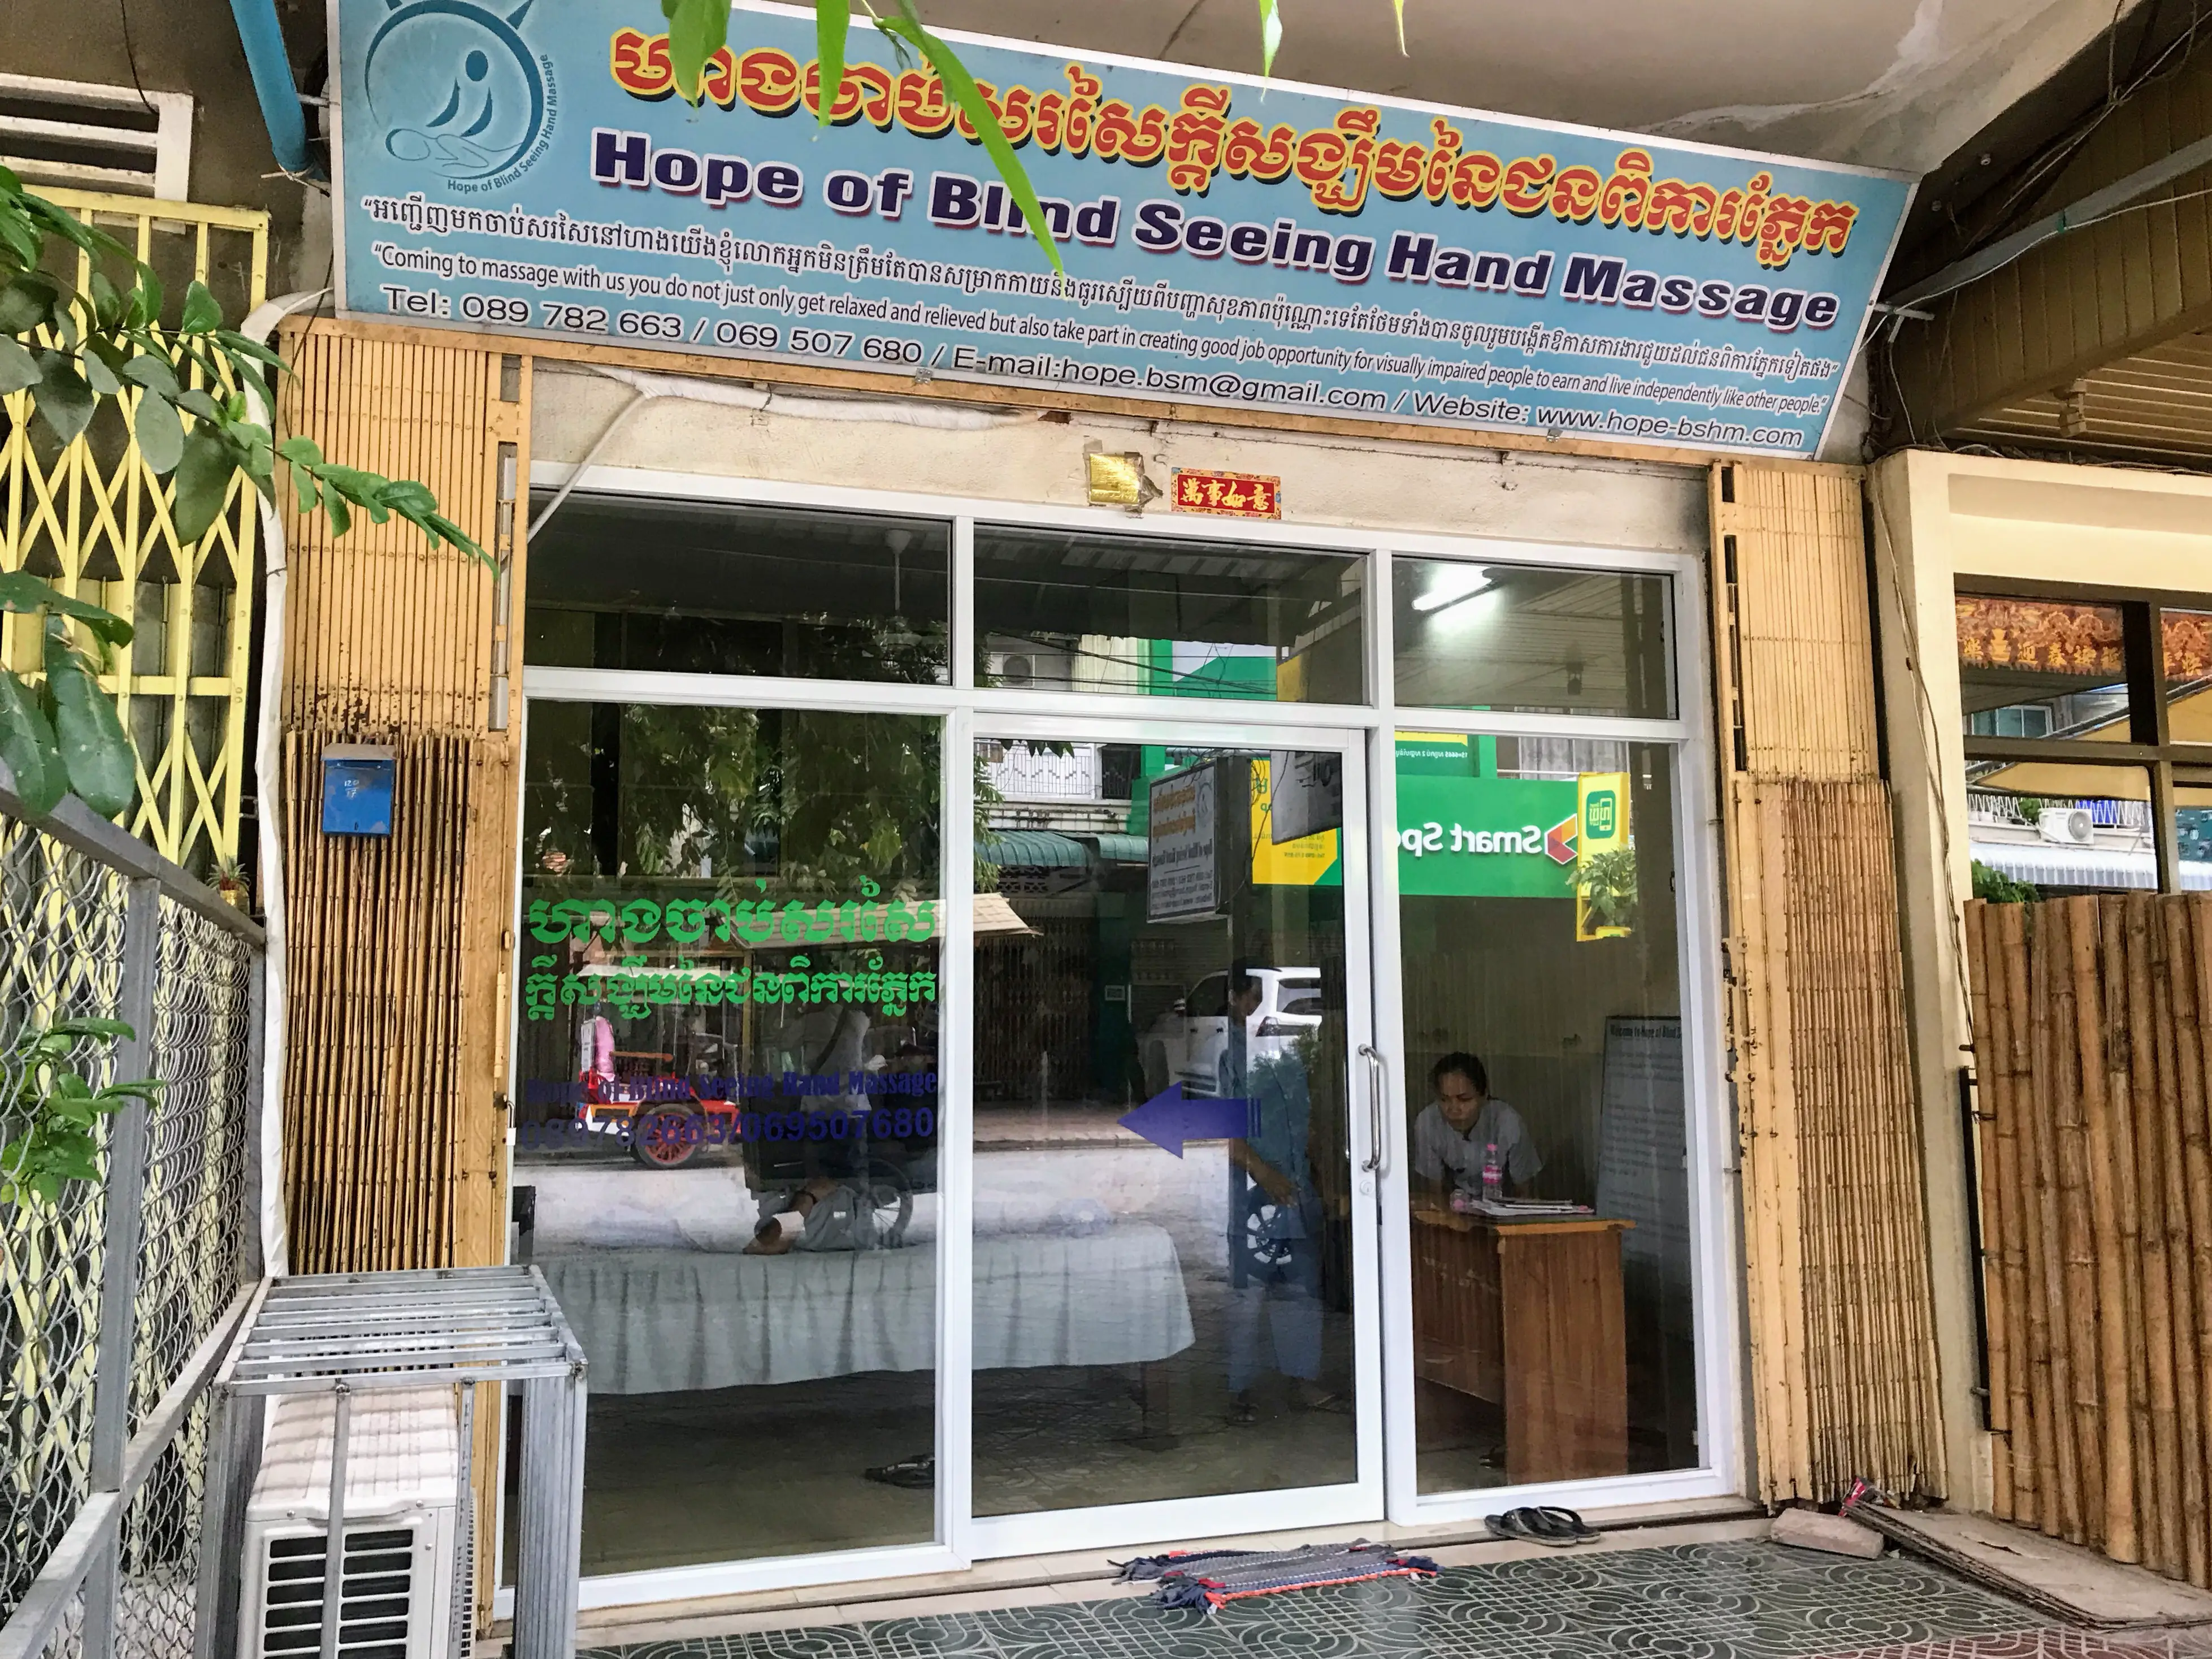 Seeing hands massage, Battambang, Cambodia 